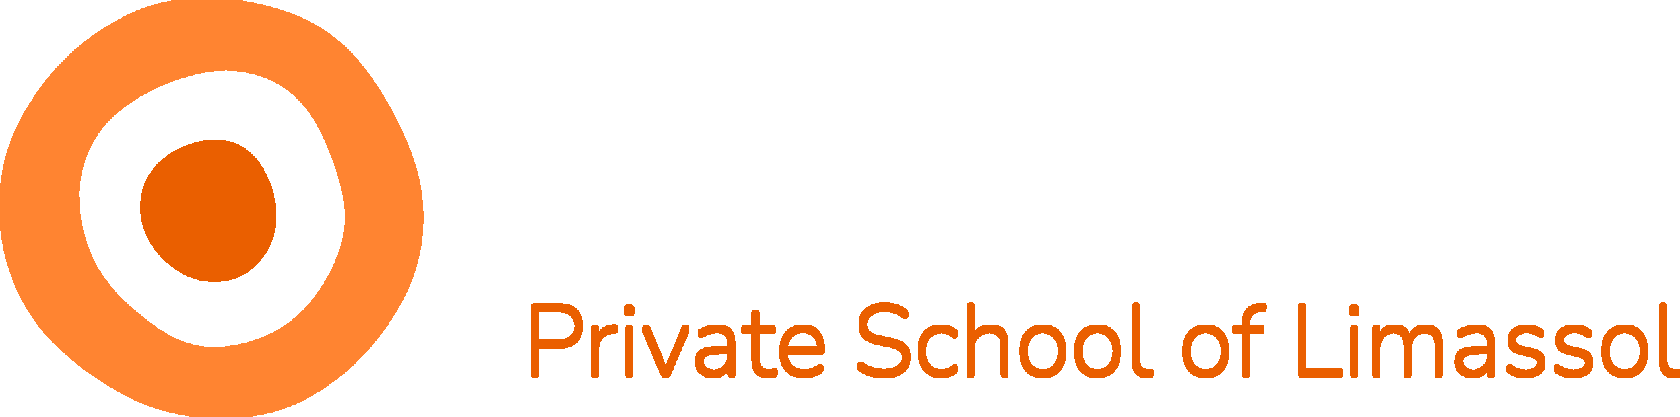 The Island Private School Ltd